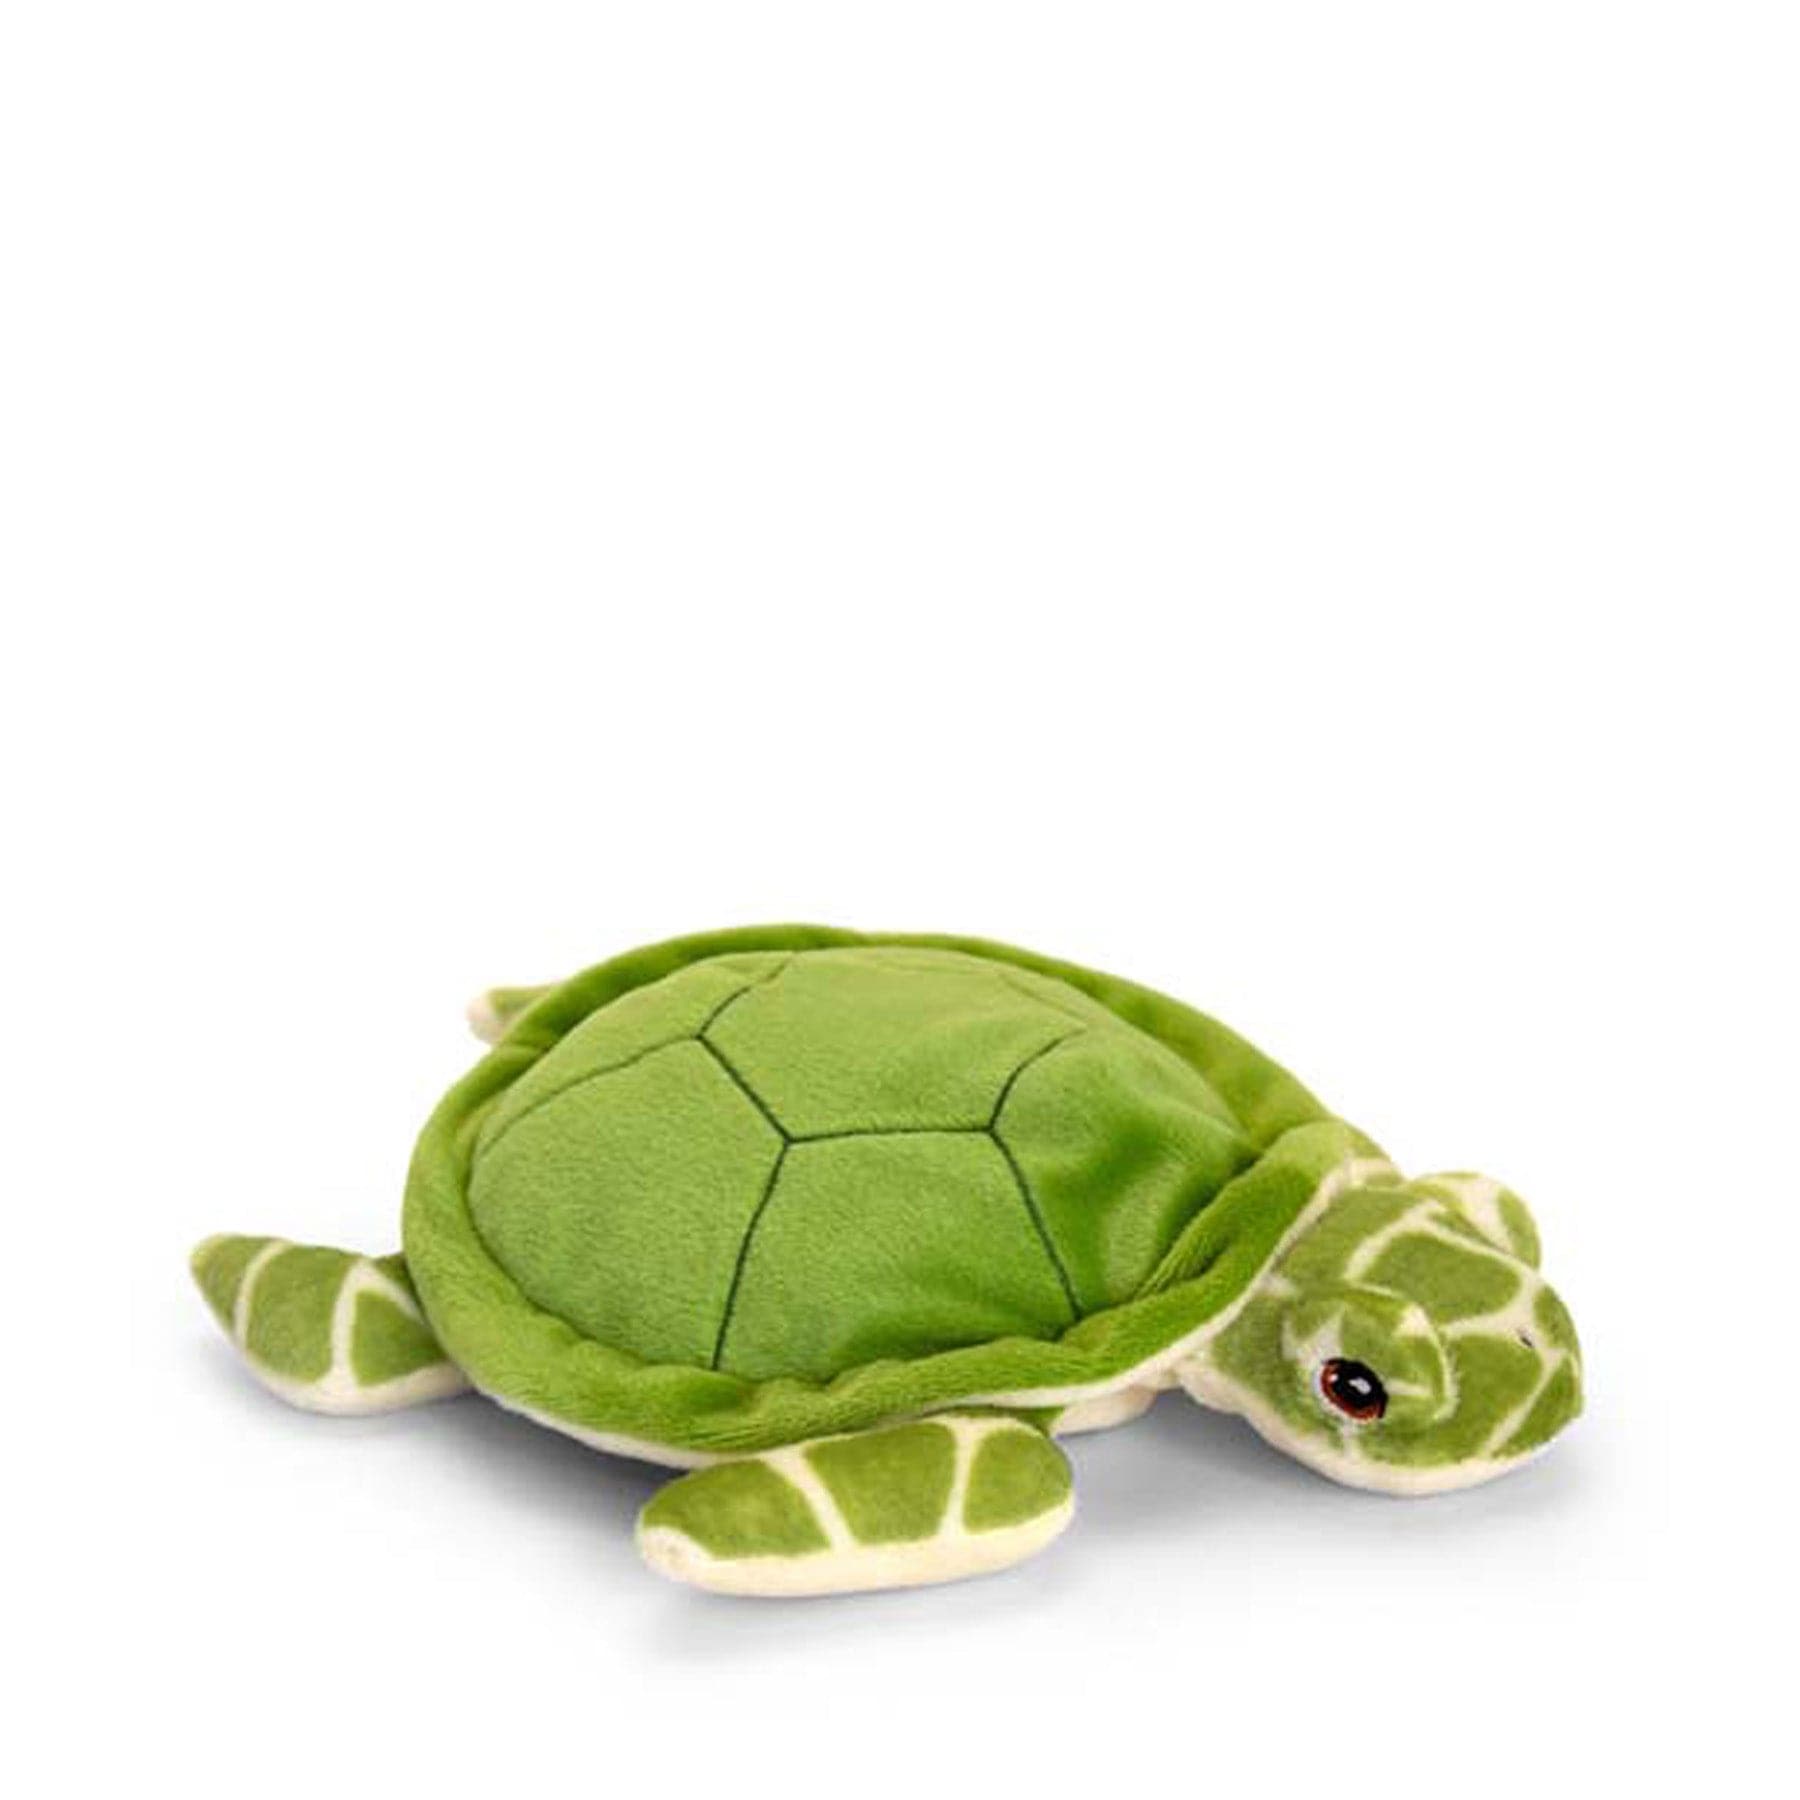 Keeleco turtle 25cm